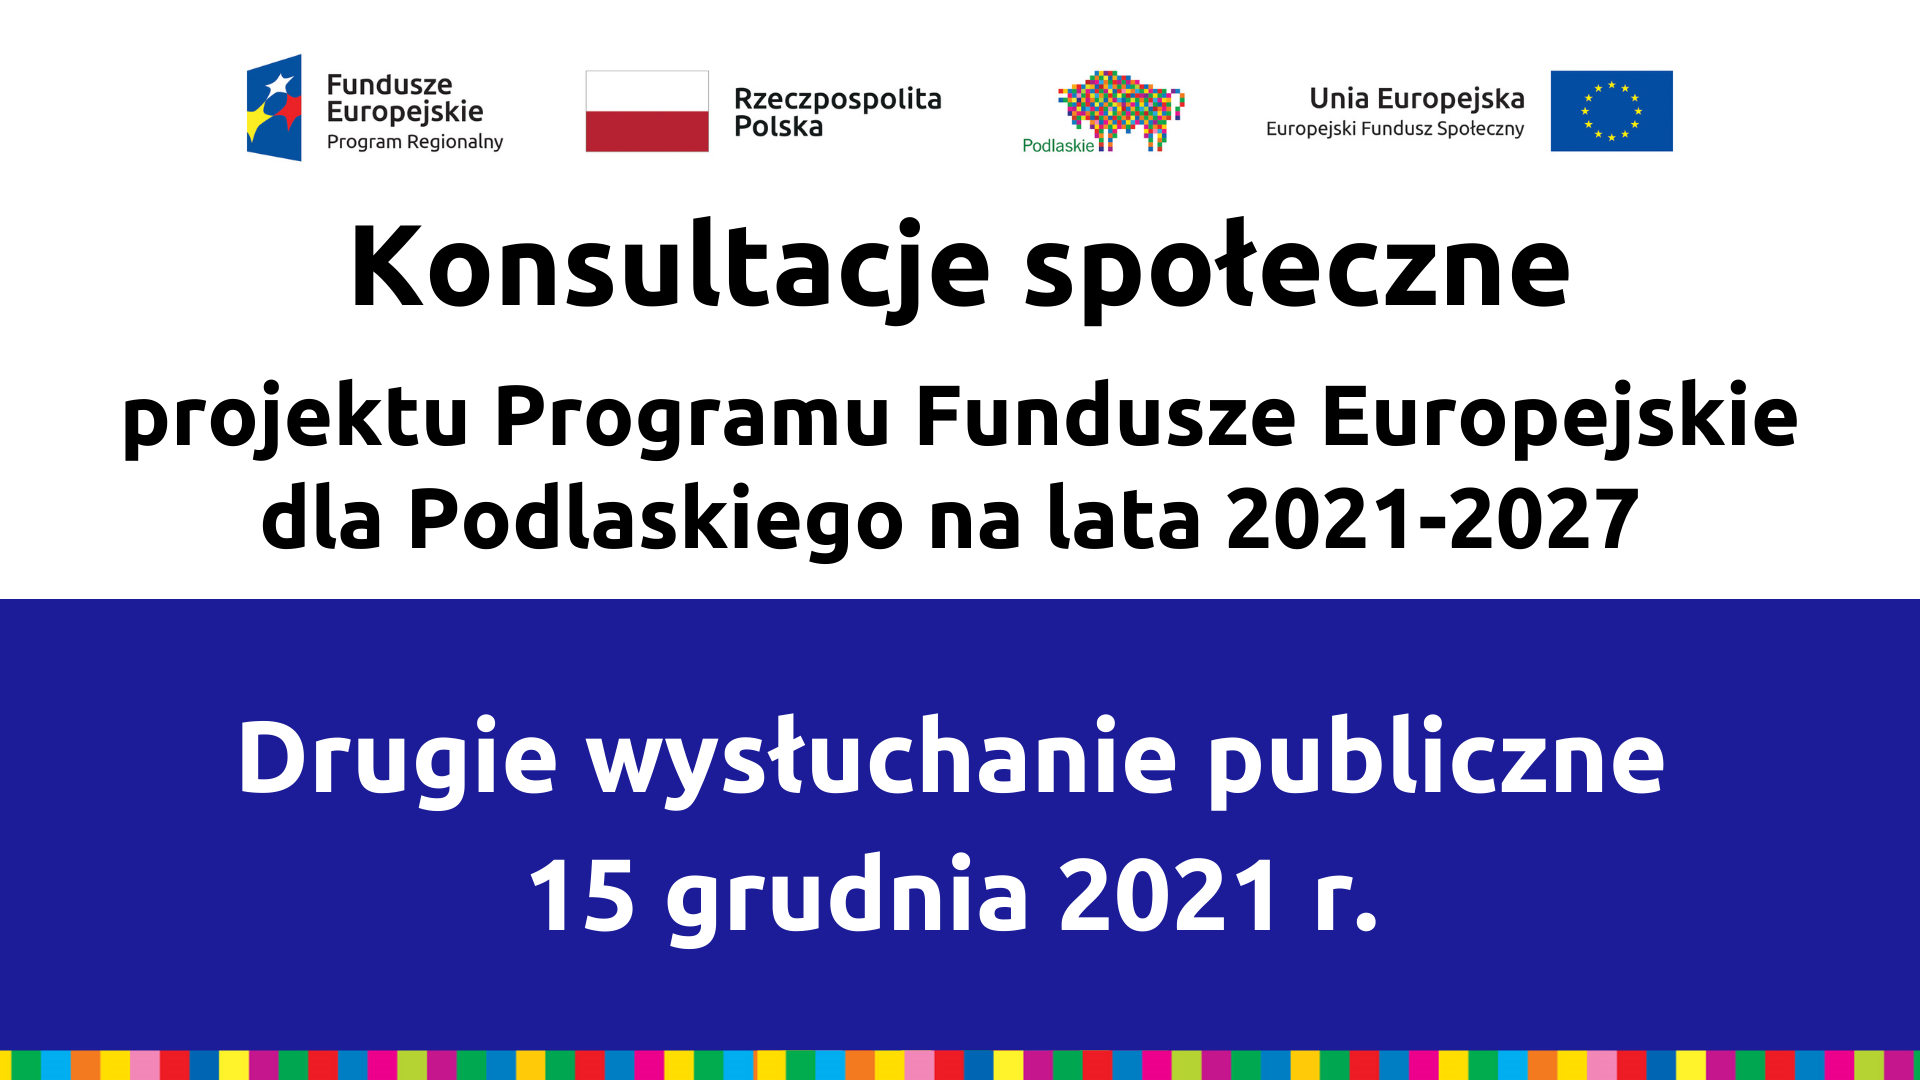 Konsultacje społeczne Programu Drugie wysłuchanie publiczne 15 grudnia 2021